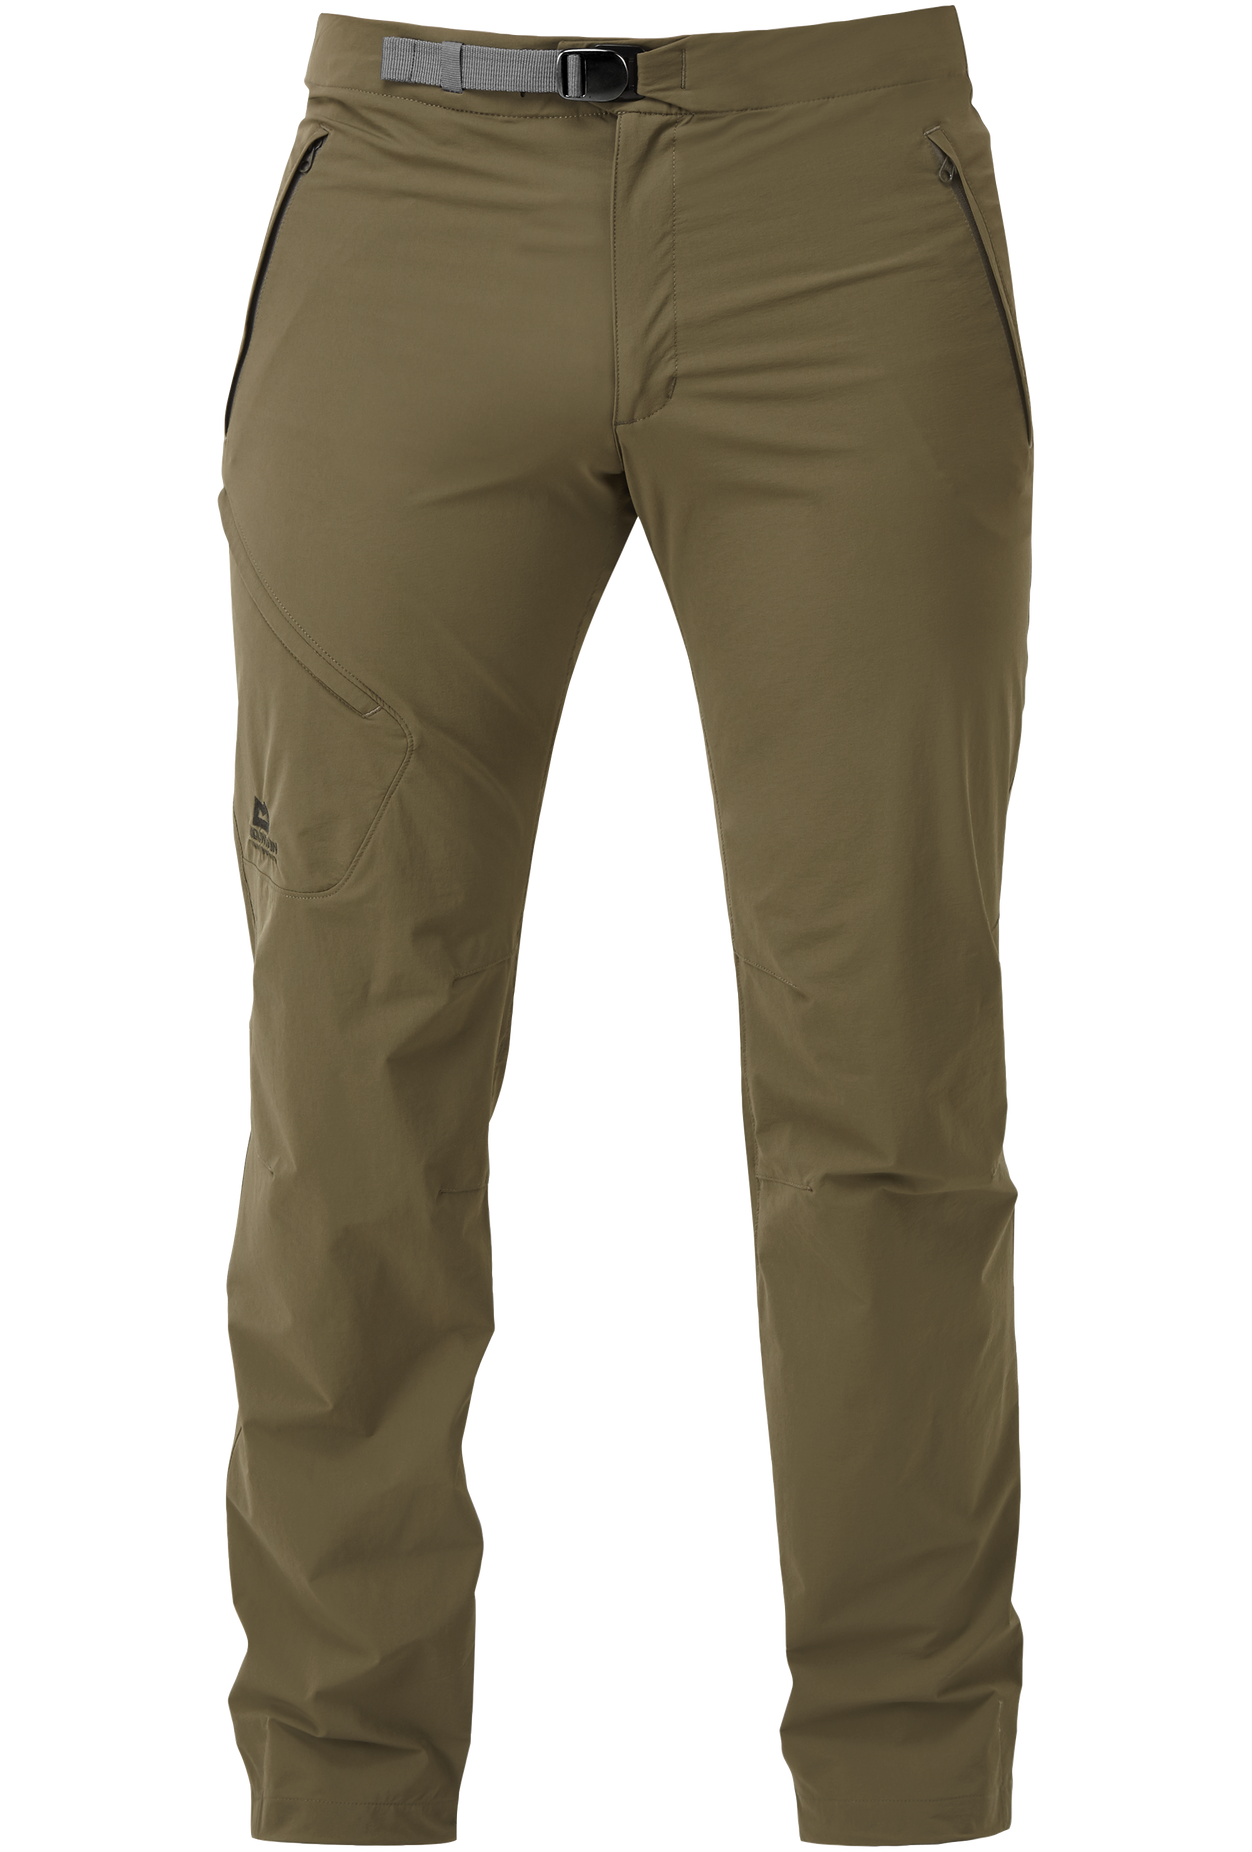 Mountain Equipment pánské softshellové kalhoty Comici Pant - zkrácené Barva: Mudstone, Velikost: 28/XS